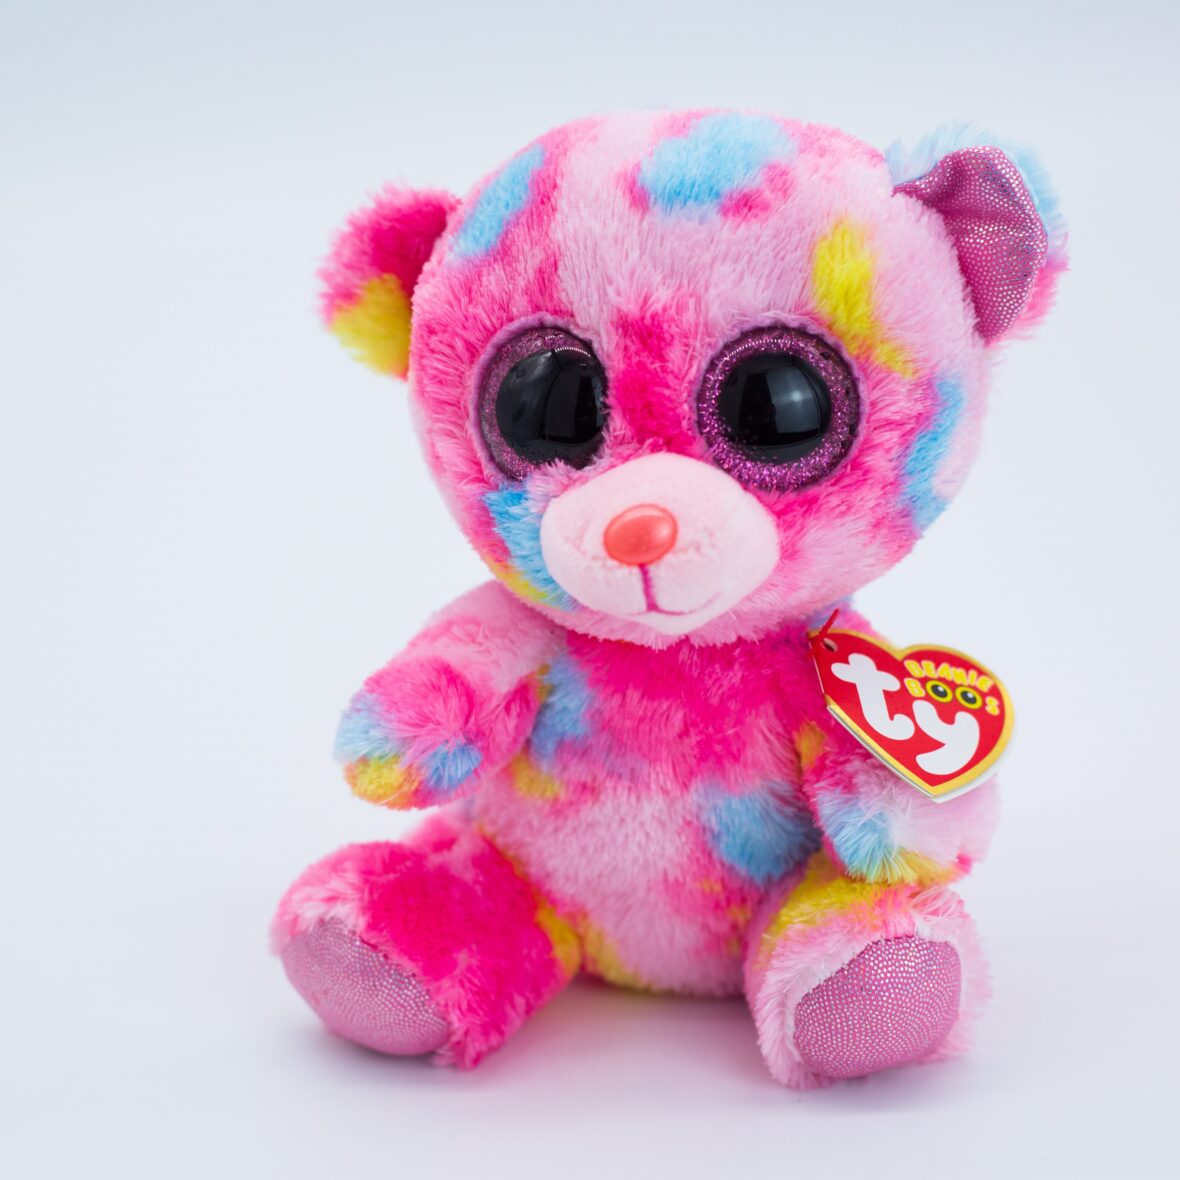 15cm Big Eyes Multicolor Teddy Bear Soft Stuffed Plush Toy